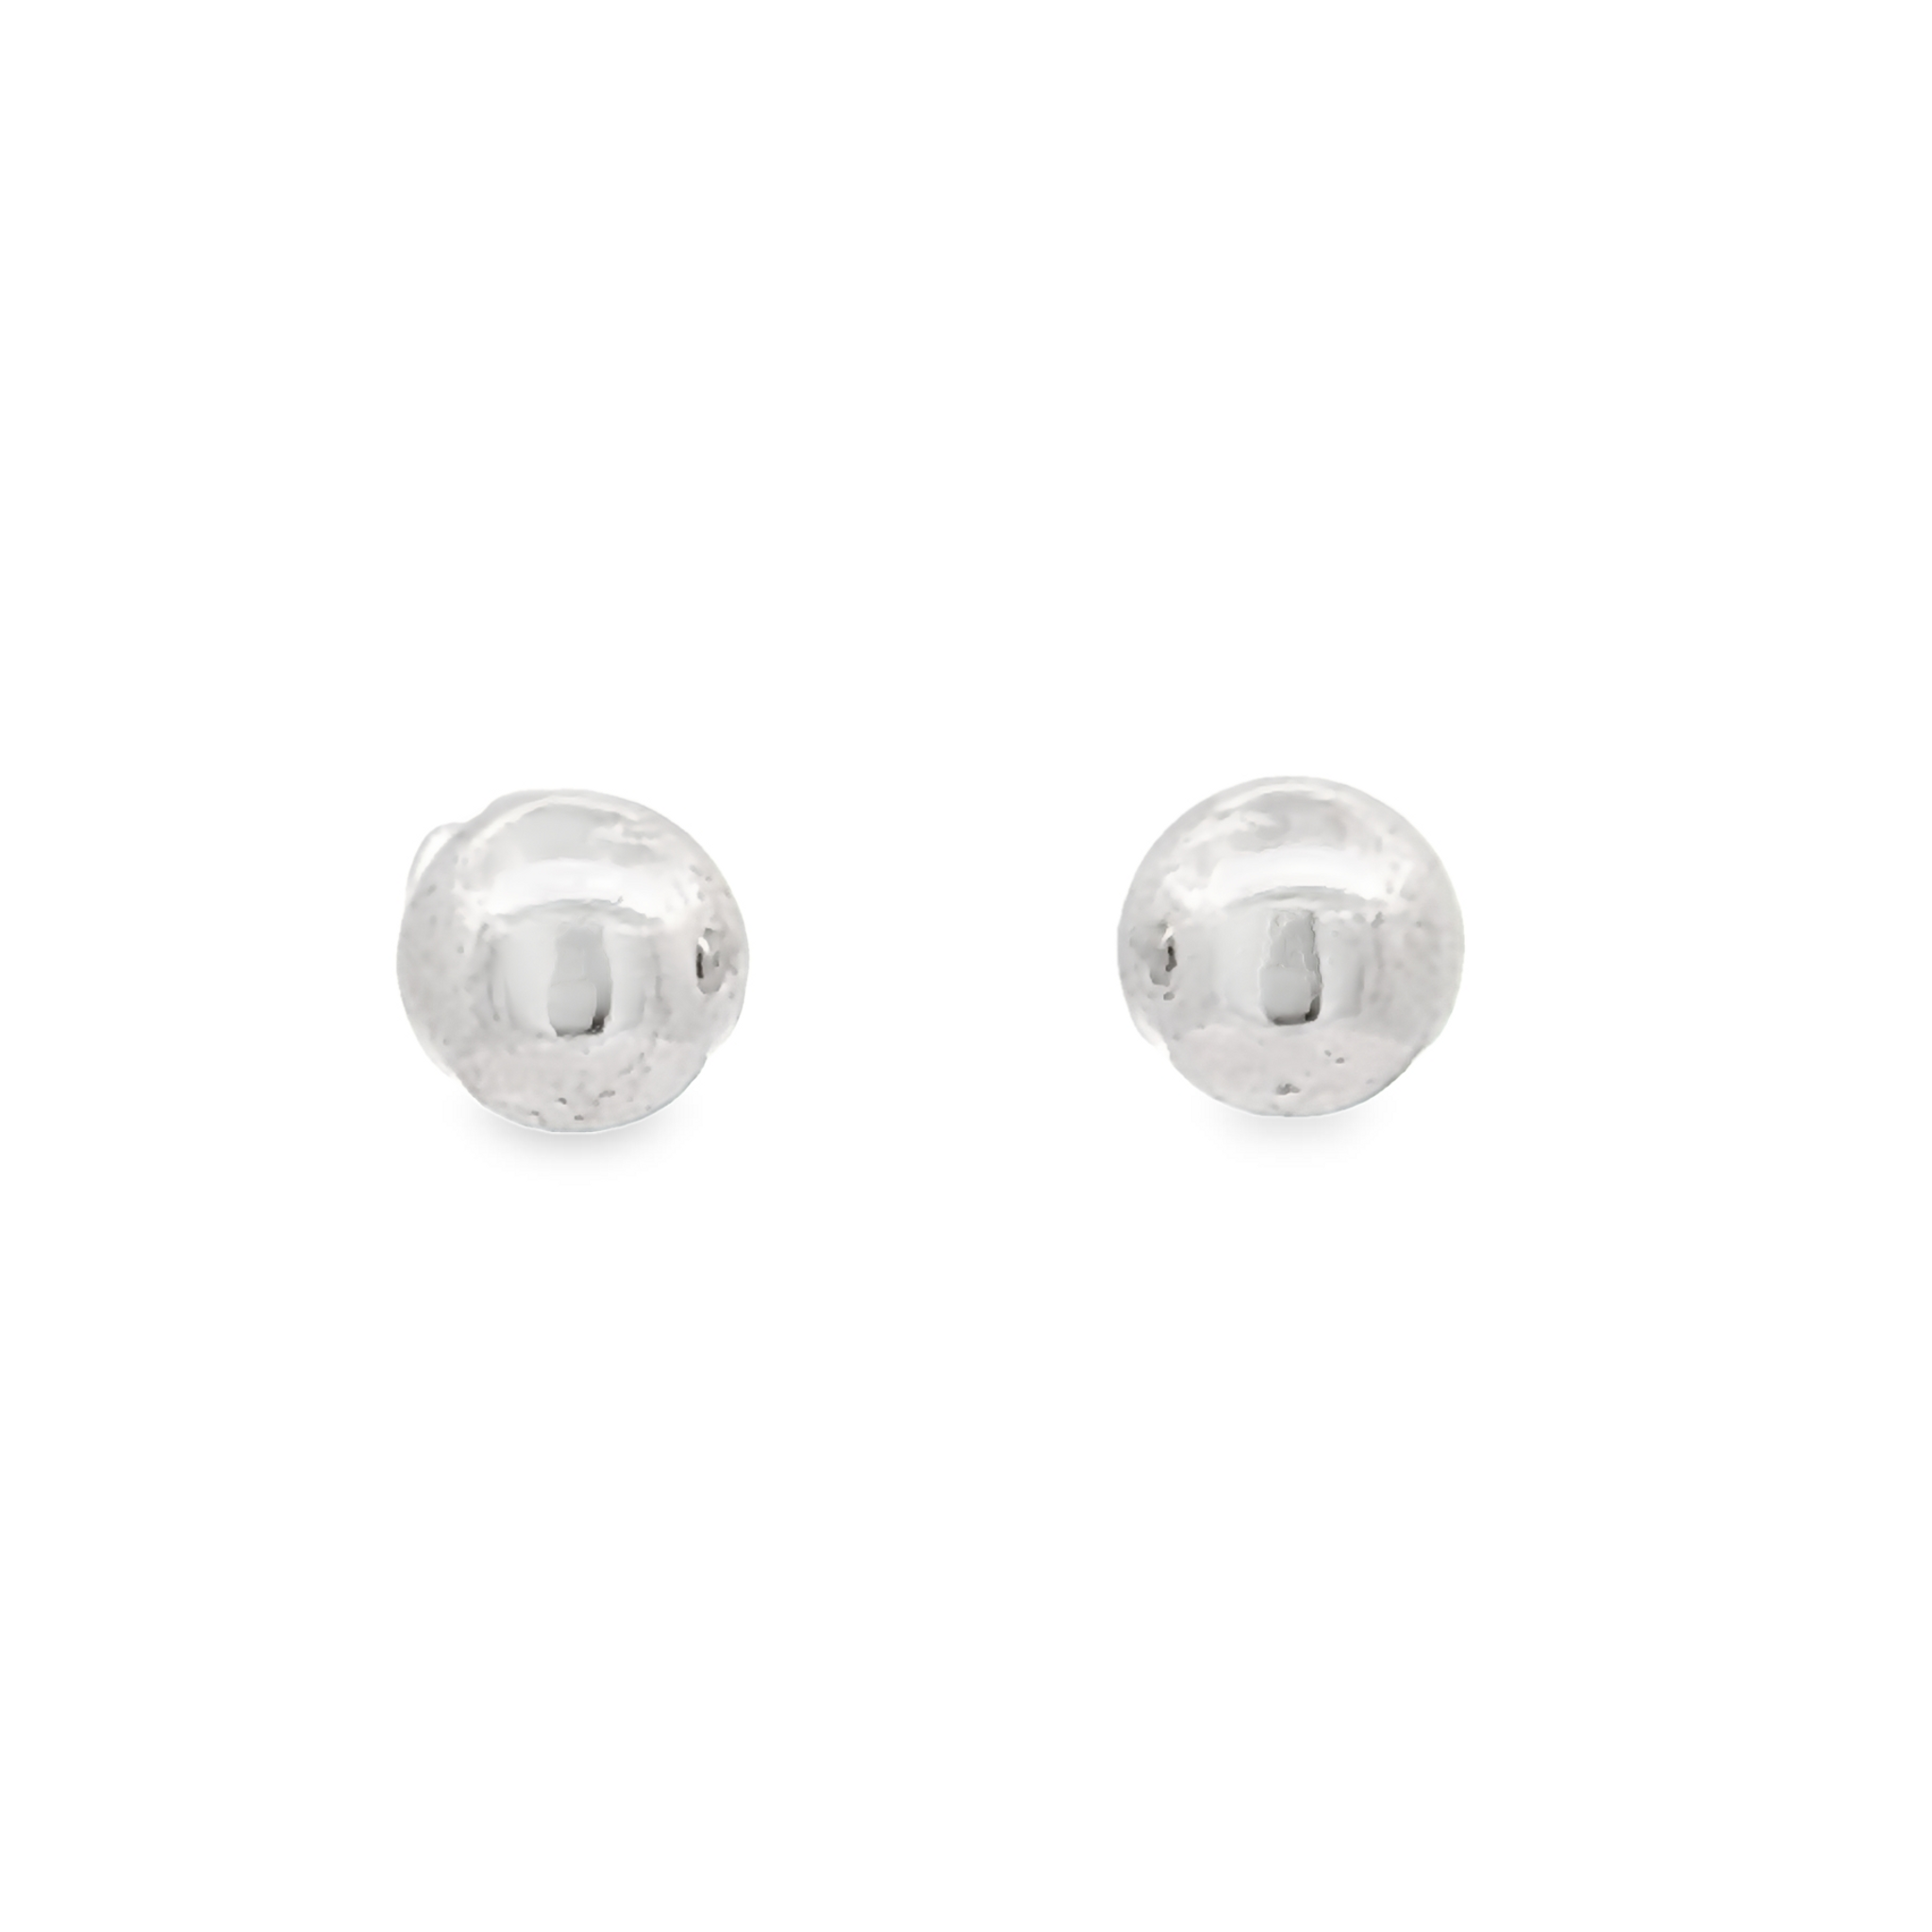 7mm Sterling Silver Ball Stud Earrings